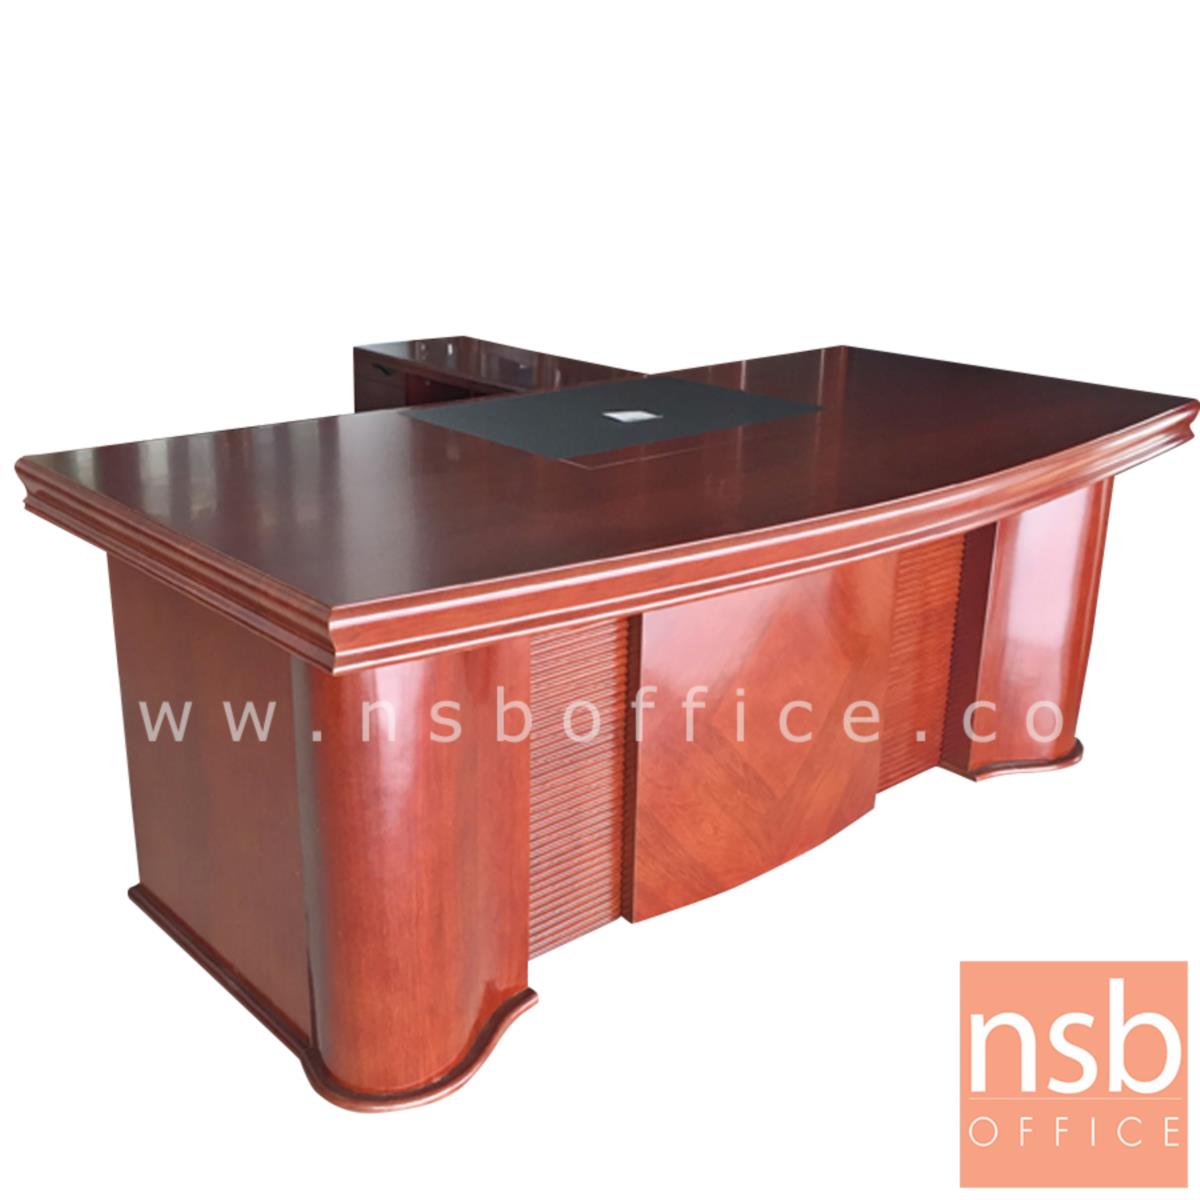 A06A047:โต๊ะผู้บริหารตัวแอลสีสัก รุ่น Sanfran (ซานฟาน) ขนาด 200W cm. พร้อมตู้ลิ้นชักและตู้ข้างโต๊ะ